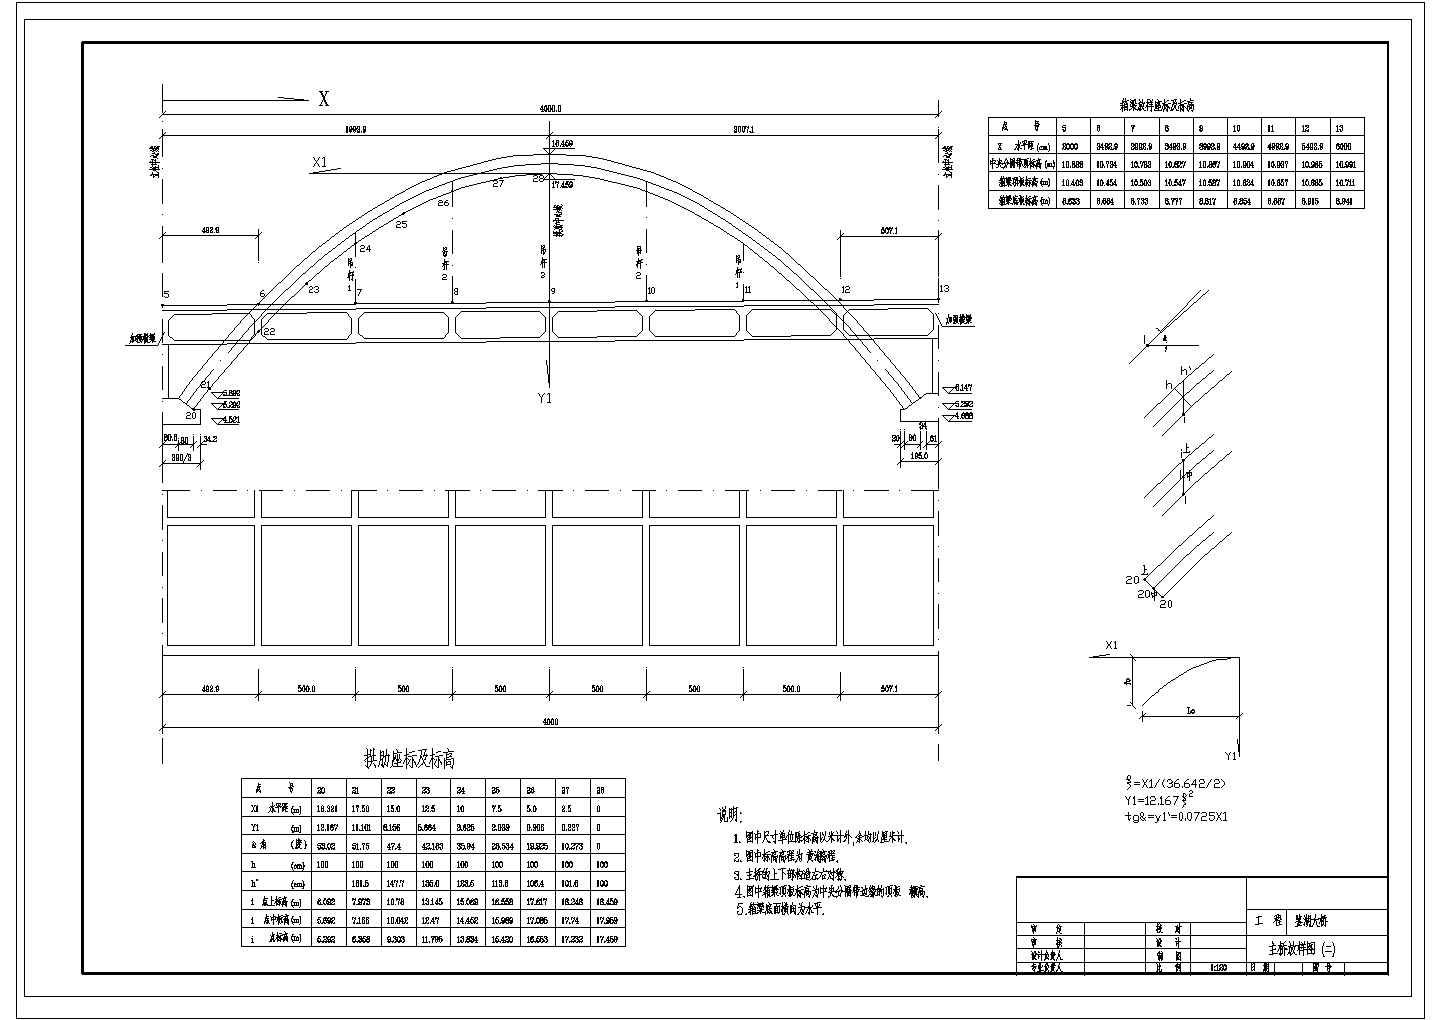 某五跨连续预应力混凝土中承式单肋钢管砼无推力拱CAD节点构造图